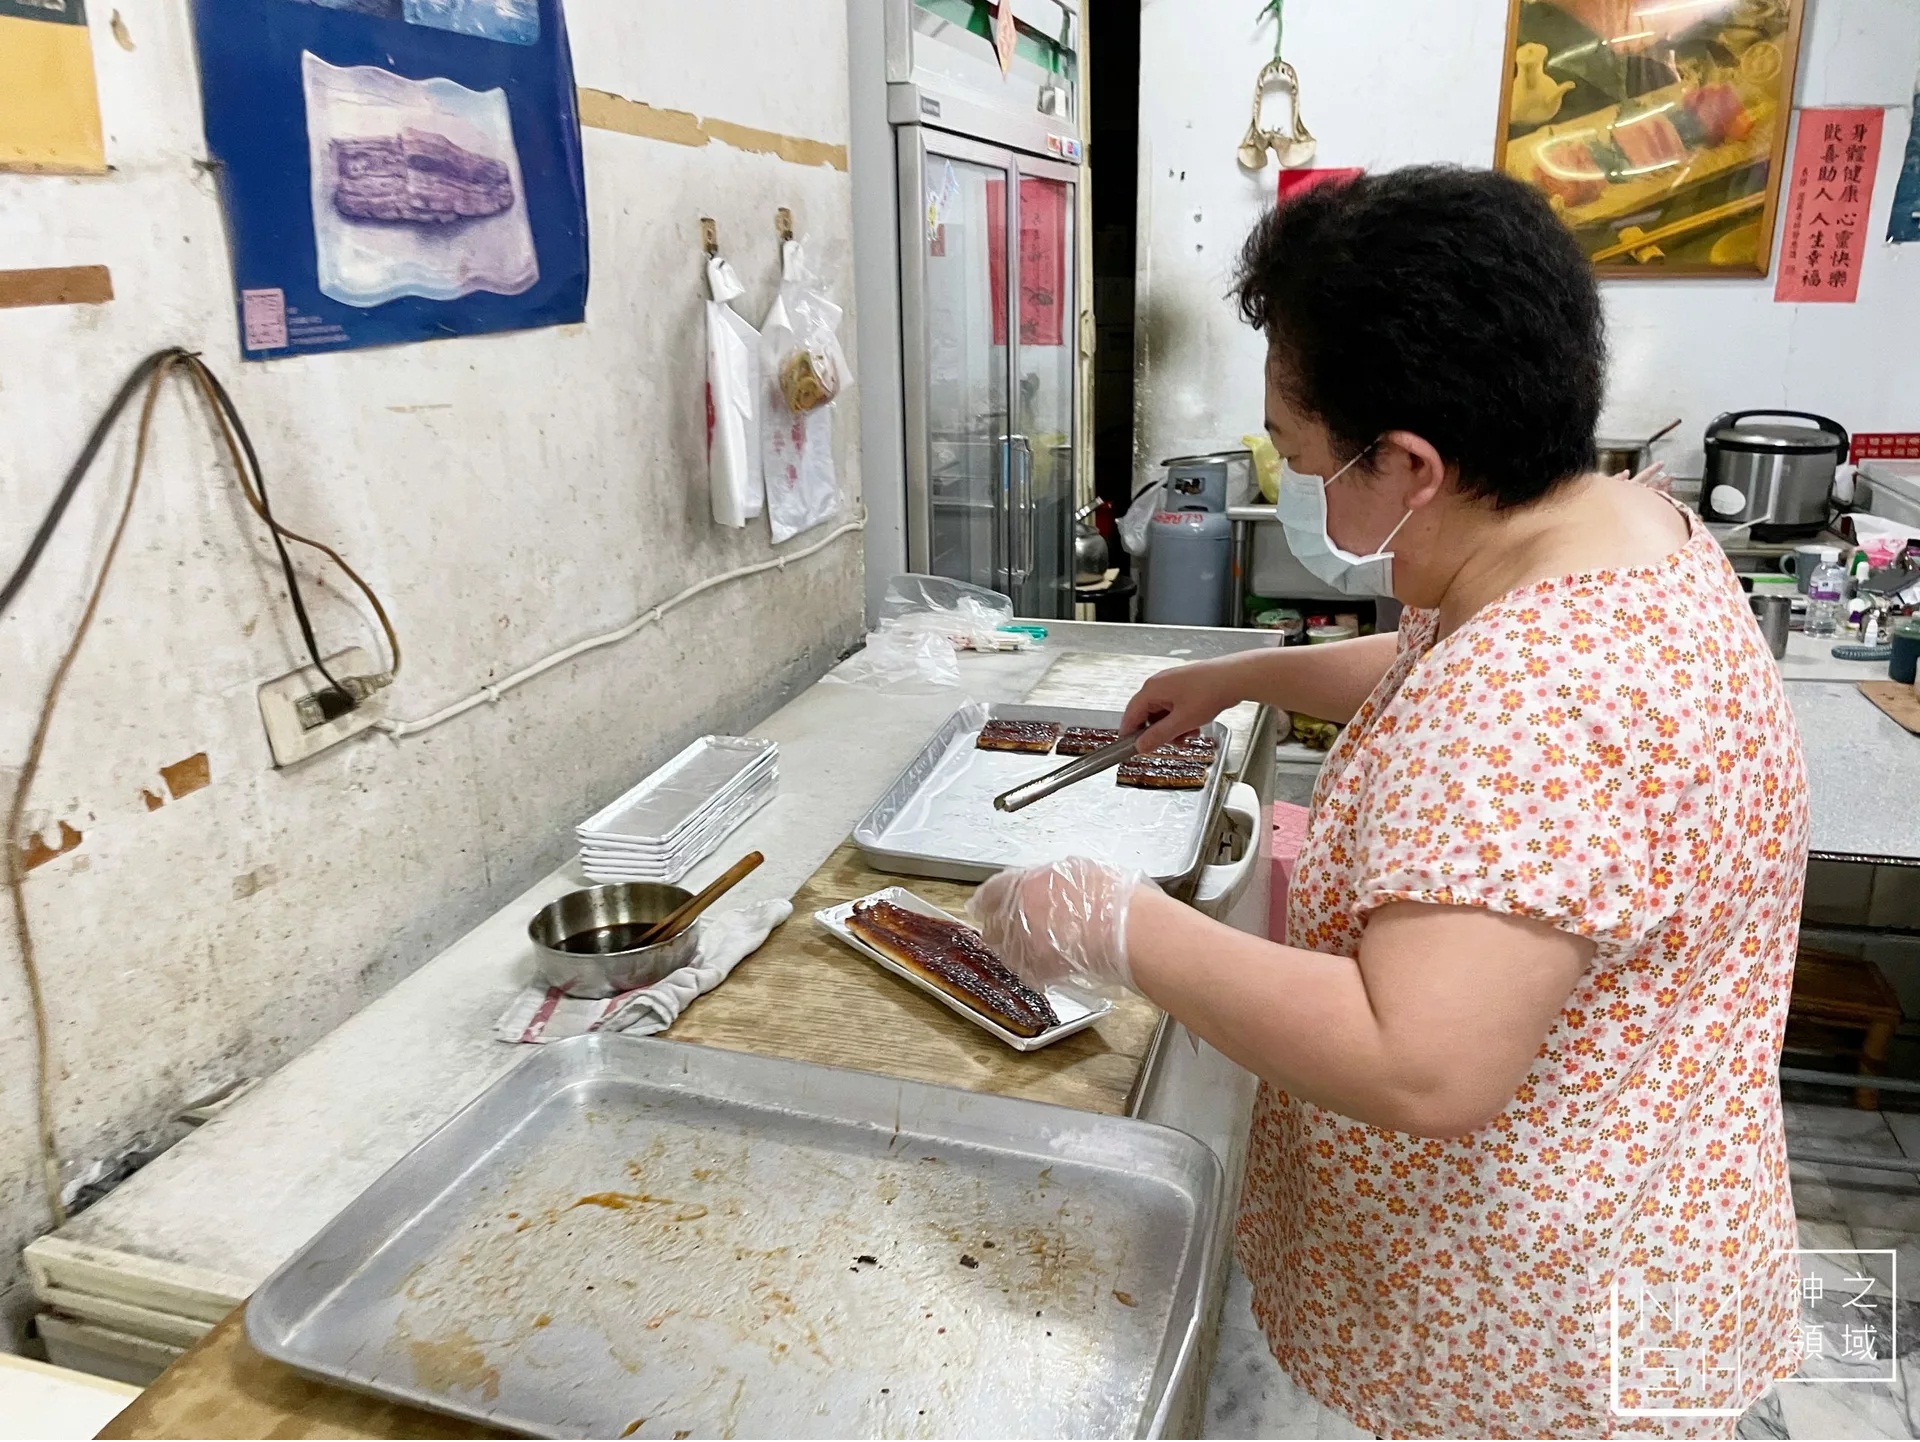 川珍鰻魚專賣店，白燒蒲燒鰻魚都超級好吃，火雲邪神料理王